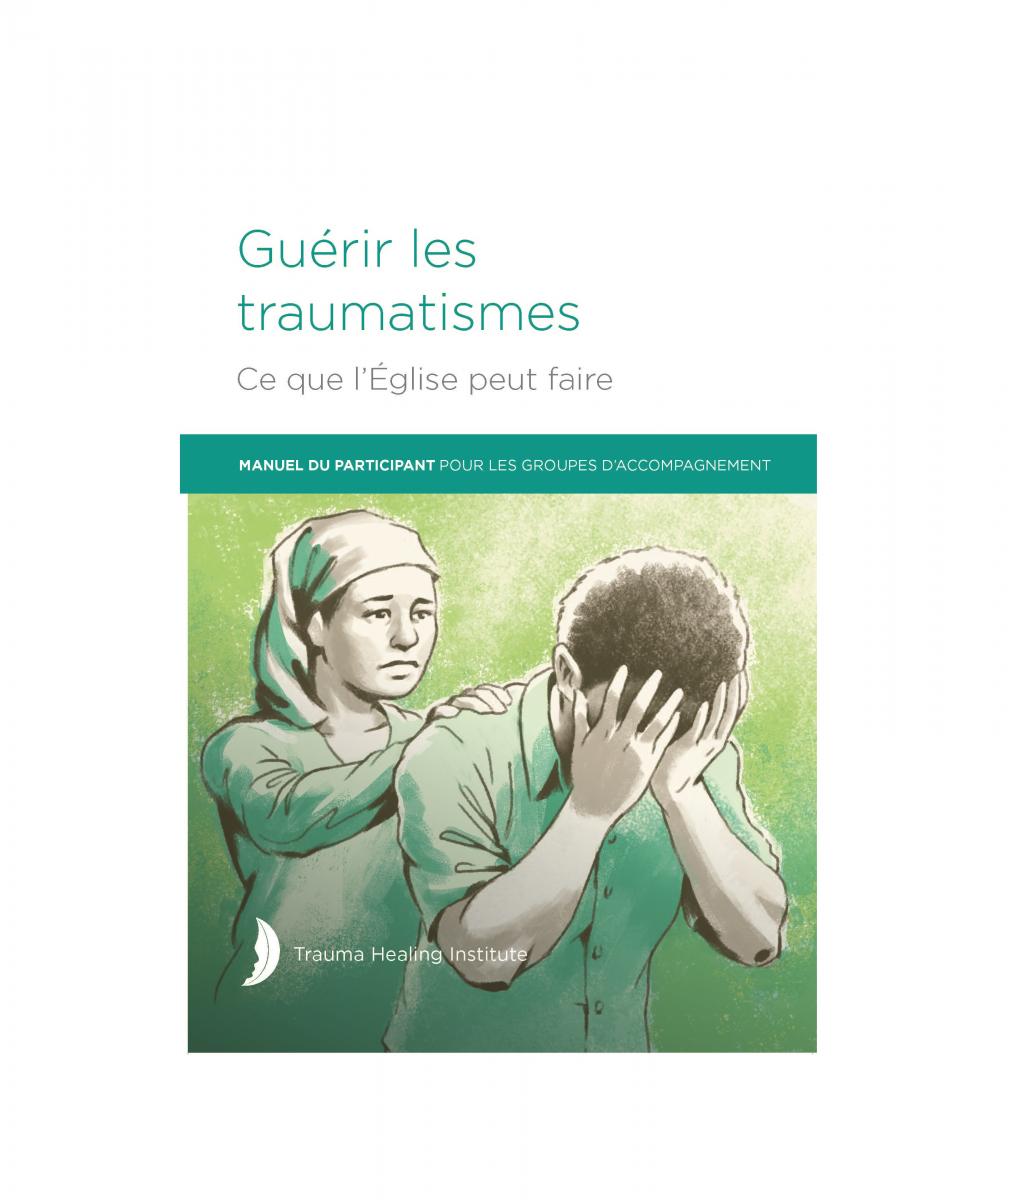 Guérir les traumatismes: Manuel Du Participant Pour Les Groupes D’Accompagnement 2021 edition - Print on Demand